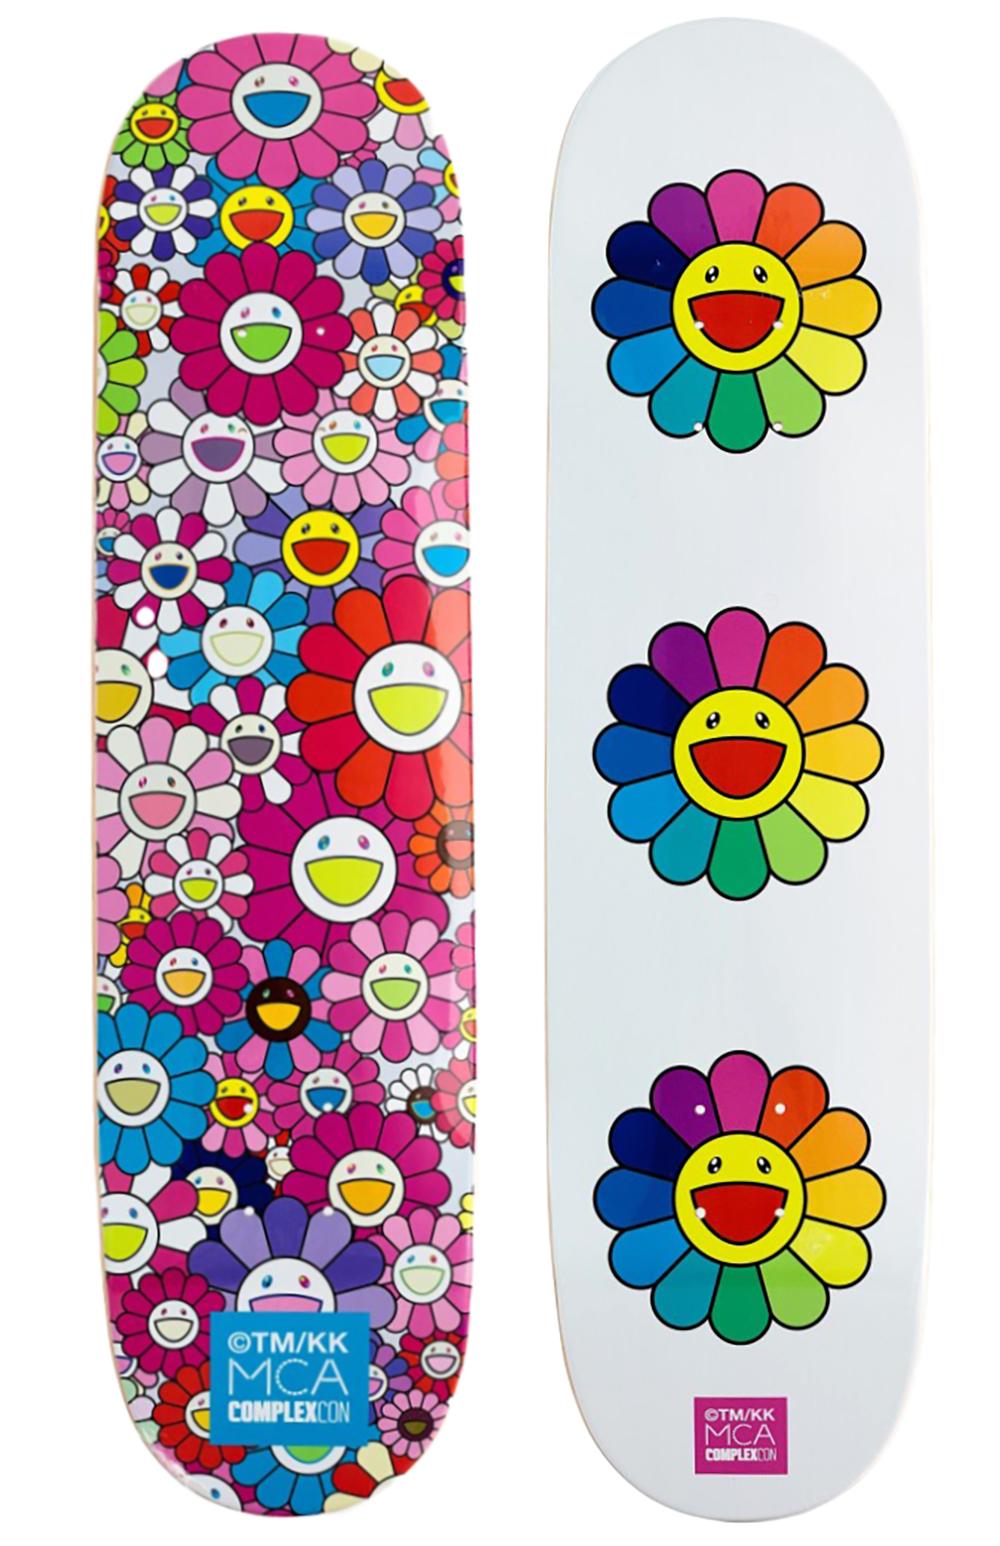 Takashi Murakami Flowers Skateboard Decks : ensemble de 2 œuvres :
Art mural vibrant de Takashi Murakami produit en série limitée à l'occasion de l'exposition Murakami 2017 : The Octopus Eats Its Own Leg, MCA Chicago. Un ensemble de 2 planches de